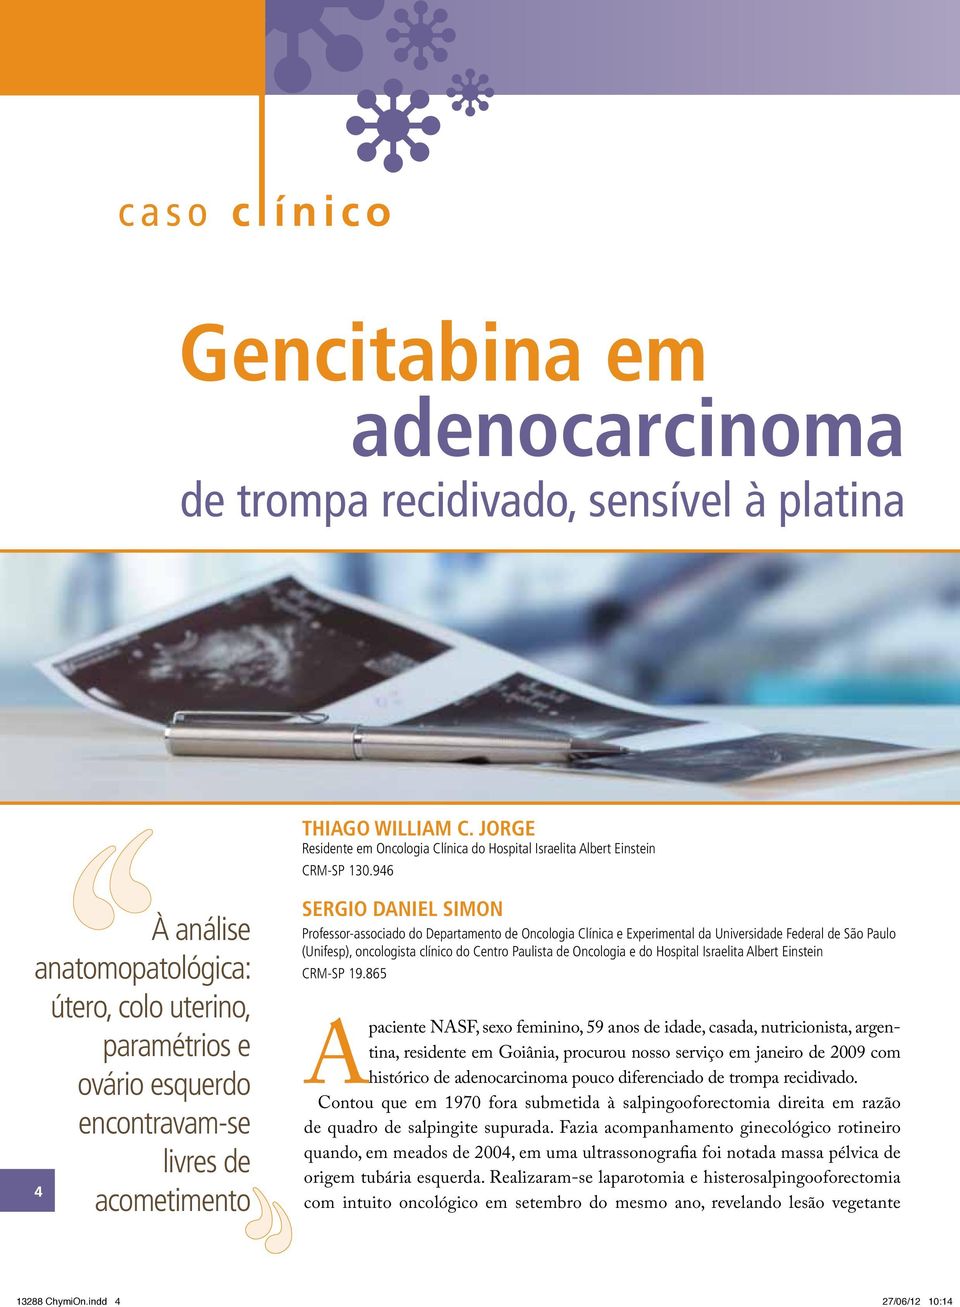 Clínica e Experimental da Universidade Federal de São Paulo (Unifesp), oncologista clínico do Centro Paulista de Oncologia e do Hospital Israelita Albert Einstein CRM-SP 19.